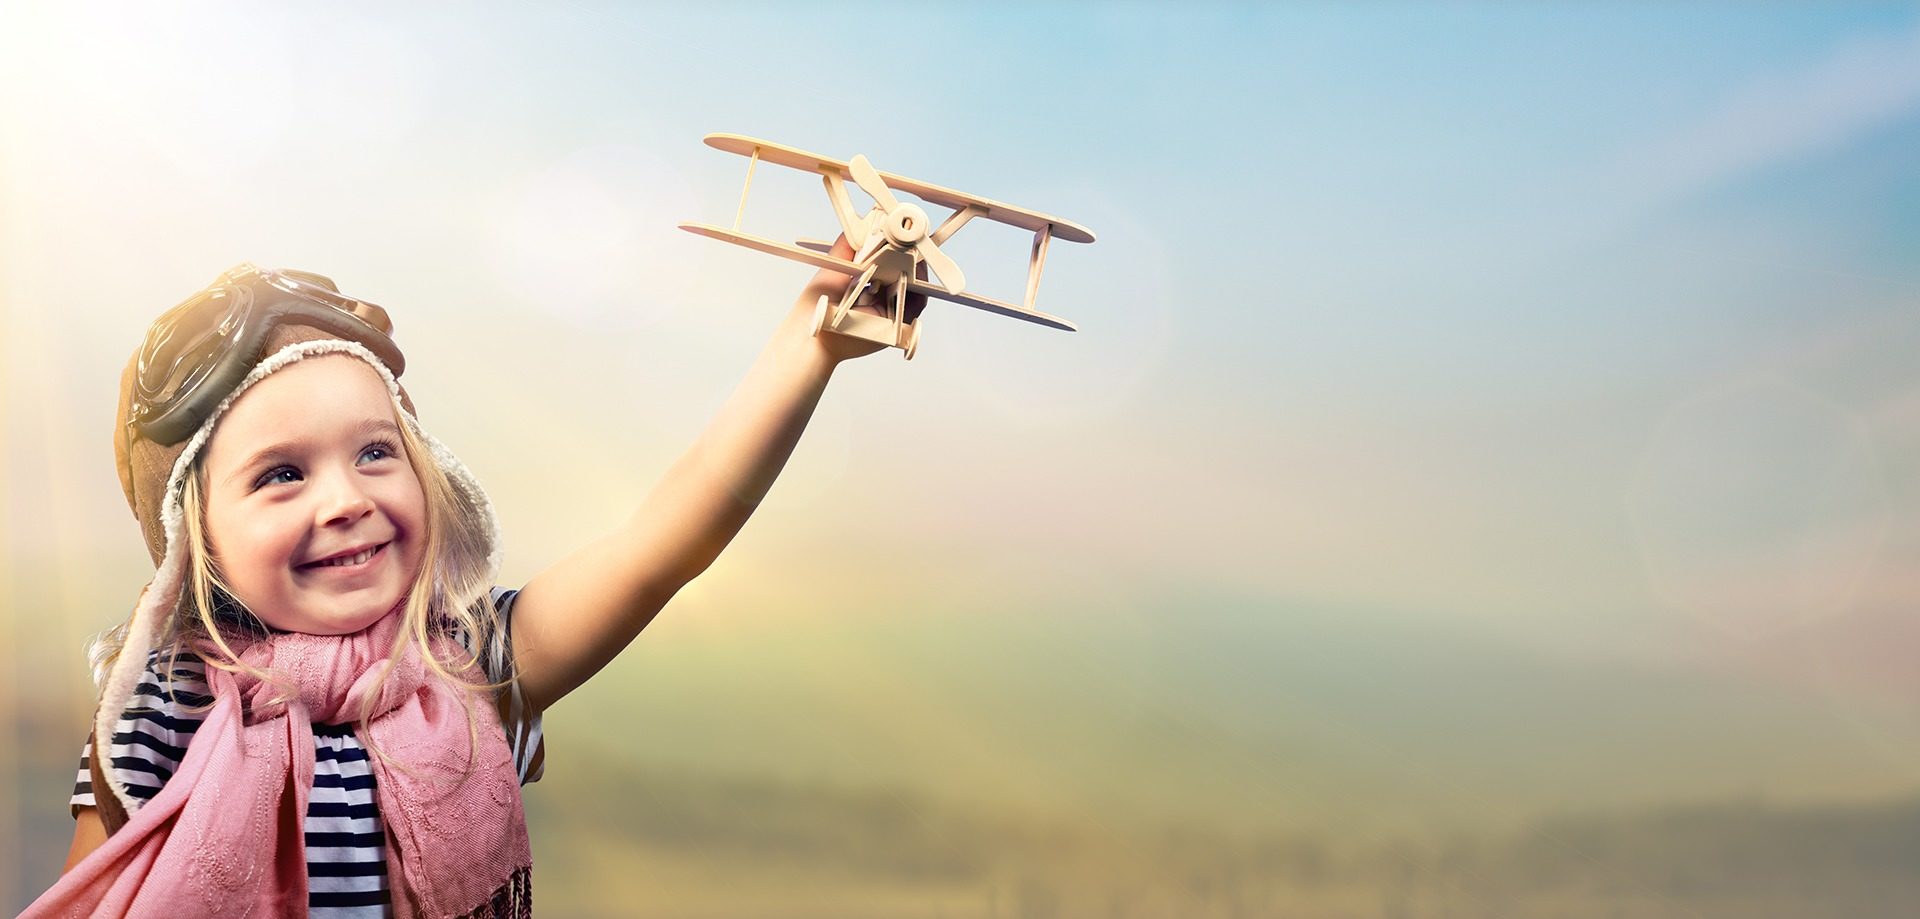 Kind spielt draußen fröhlich mit Holzflugzeug, es wirkt ausgelassen und glücklich